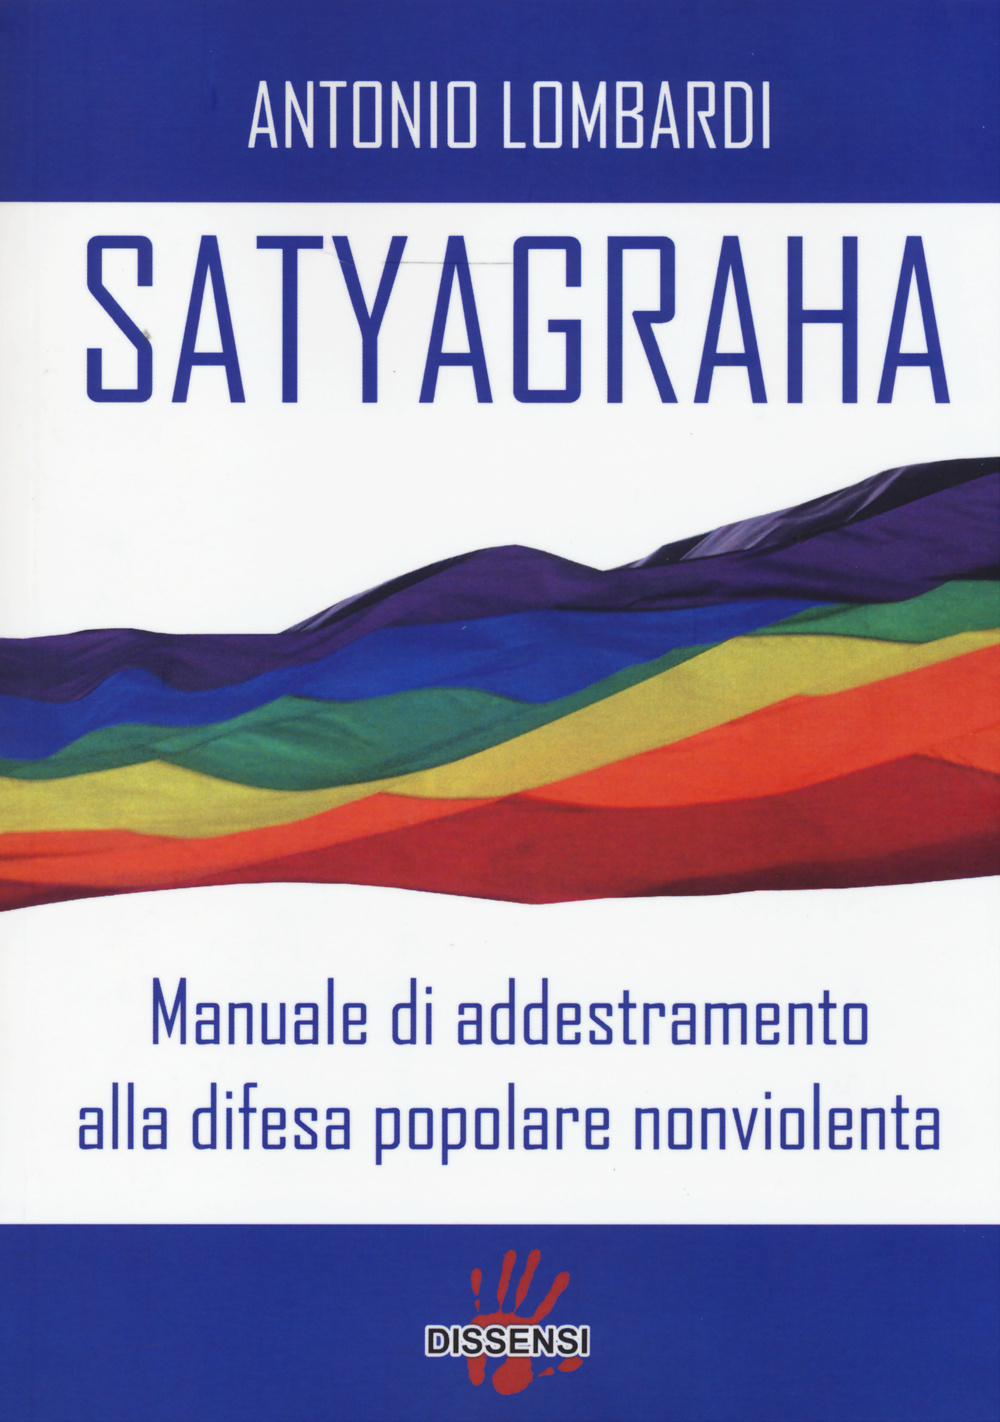 Satyagraha. Manuale di addestramento alla difesa popolare nonviolenta